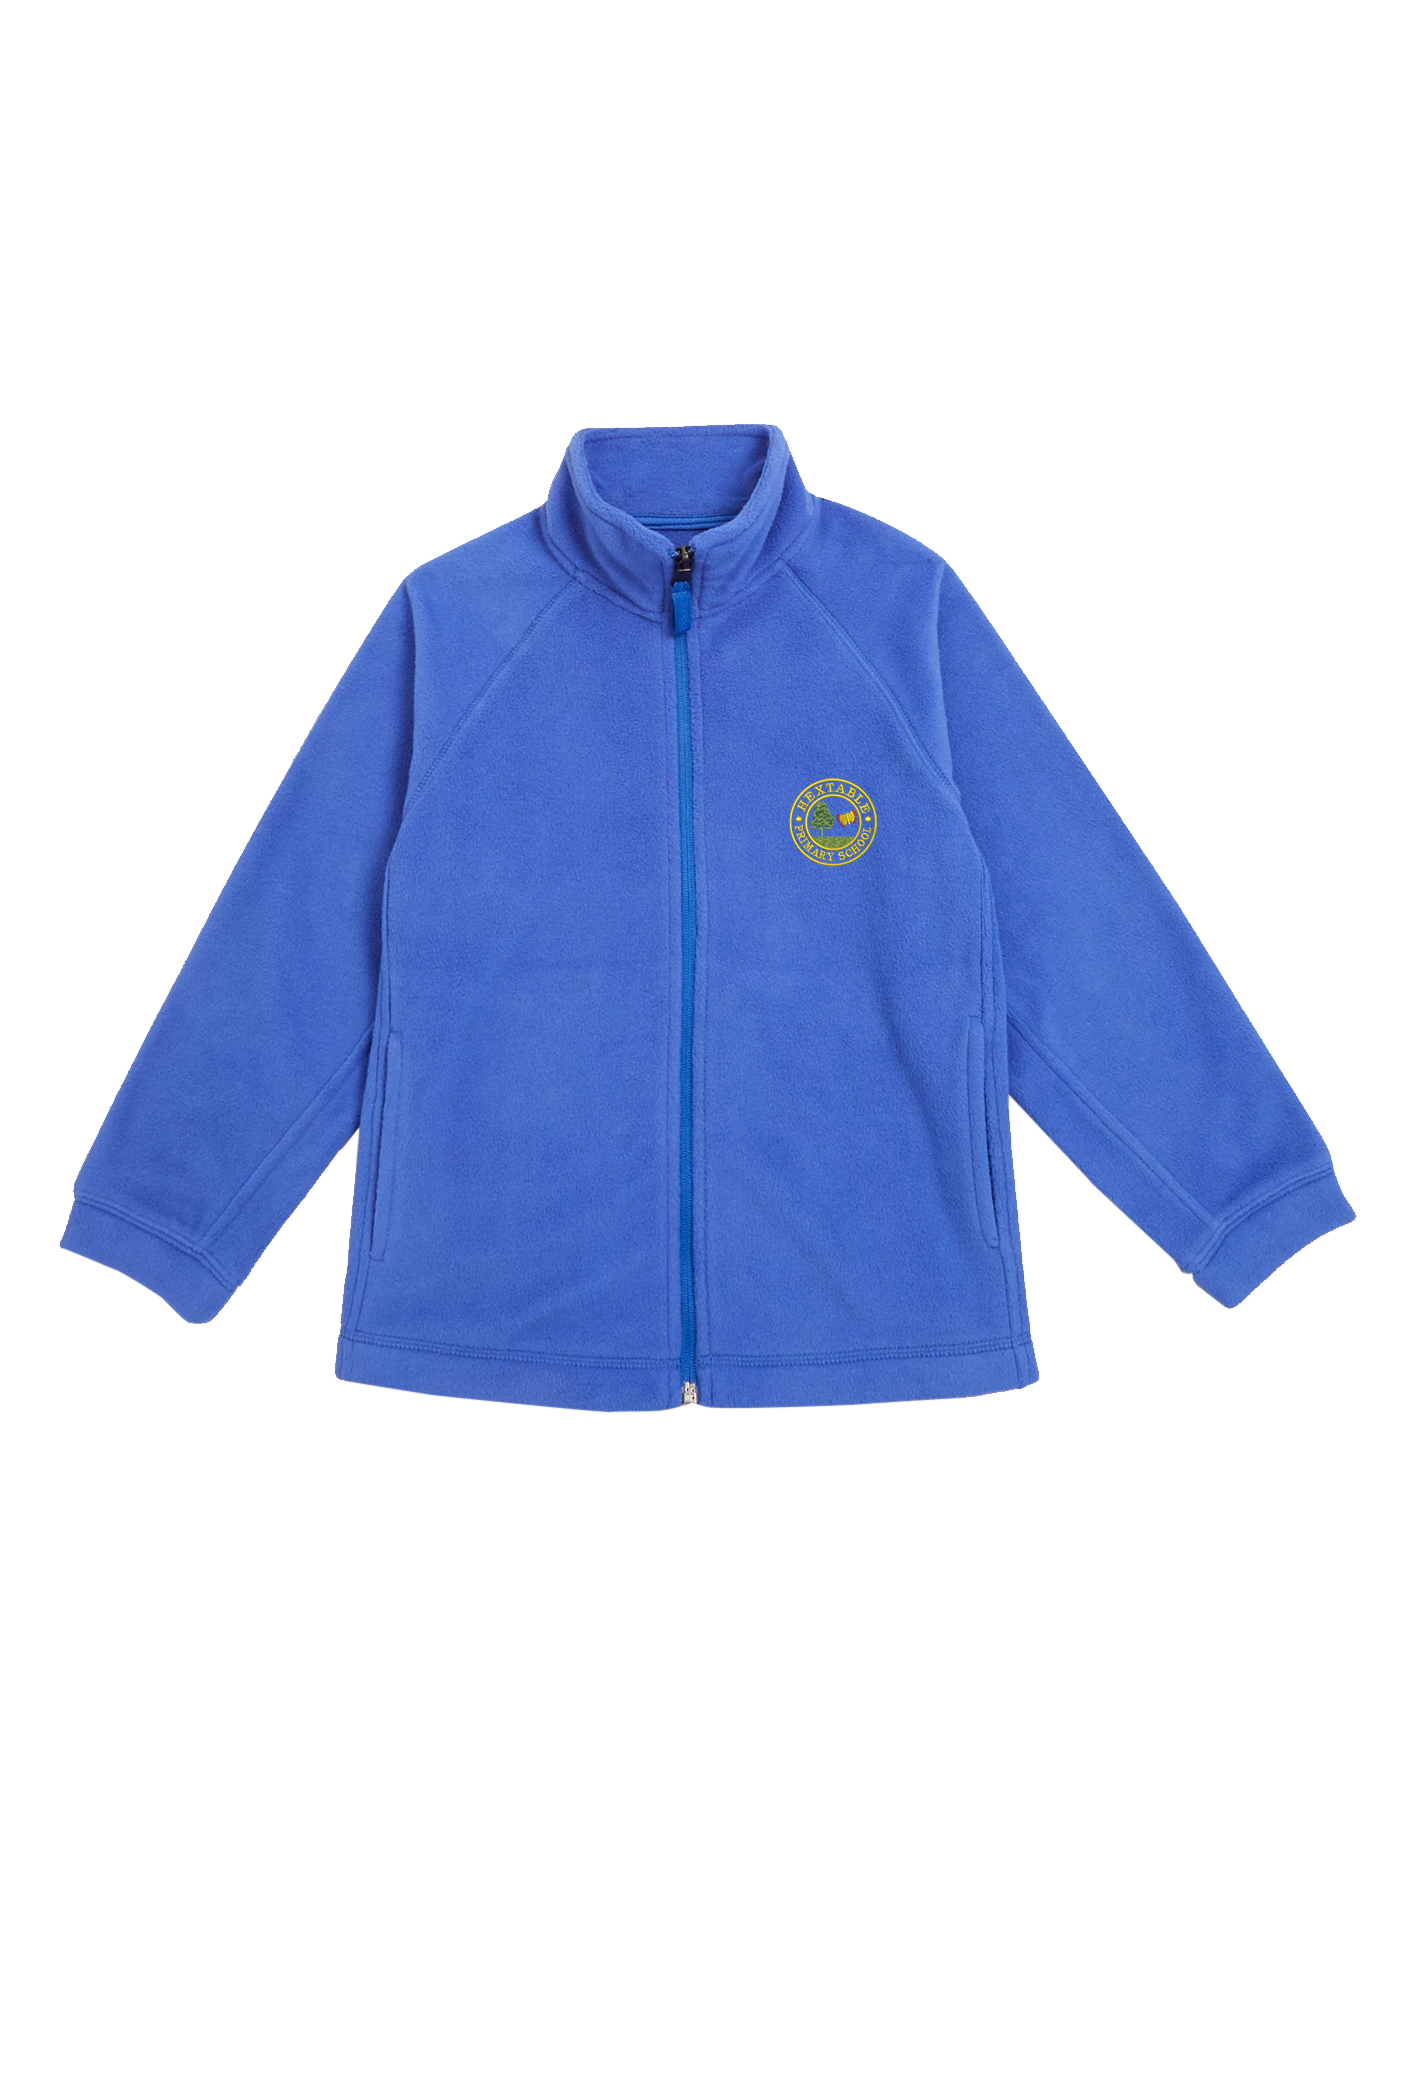 Hextable Primary School Fleece Jacket